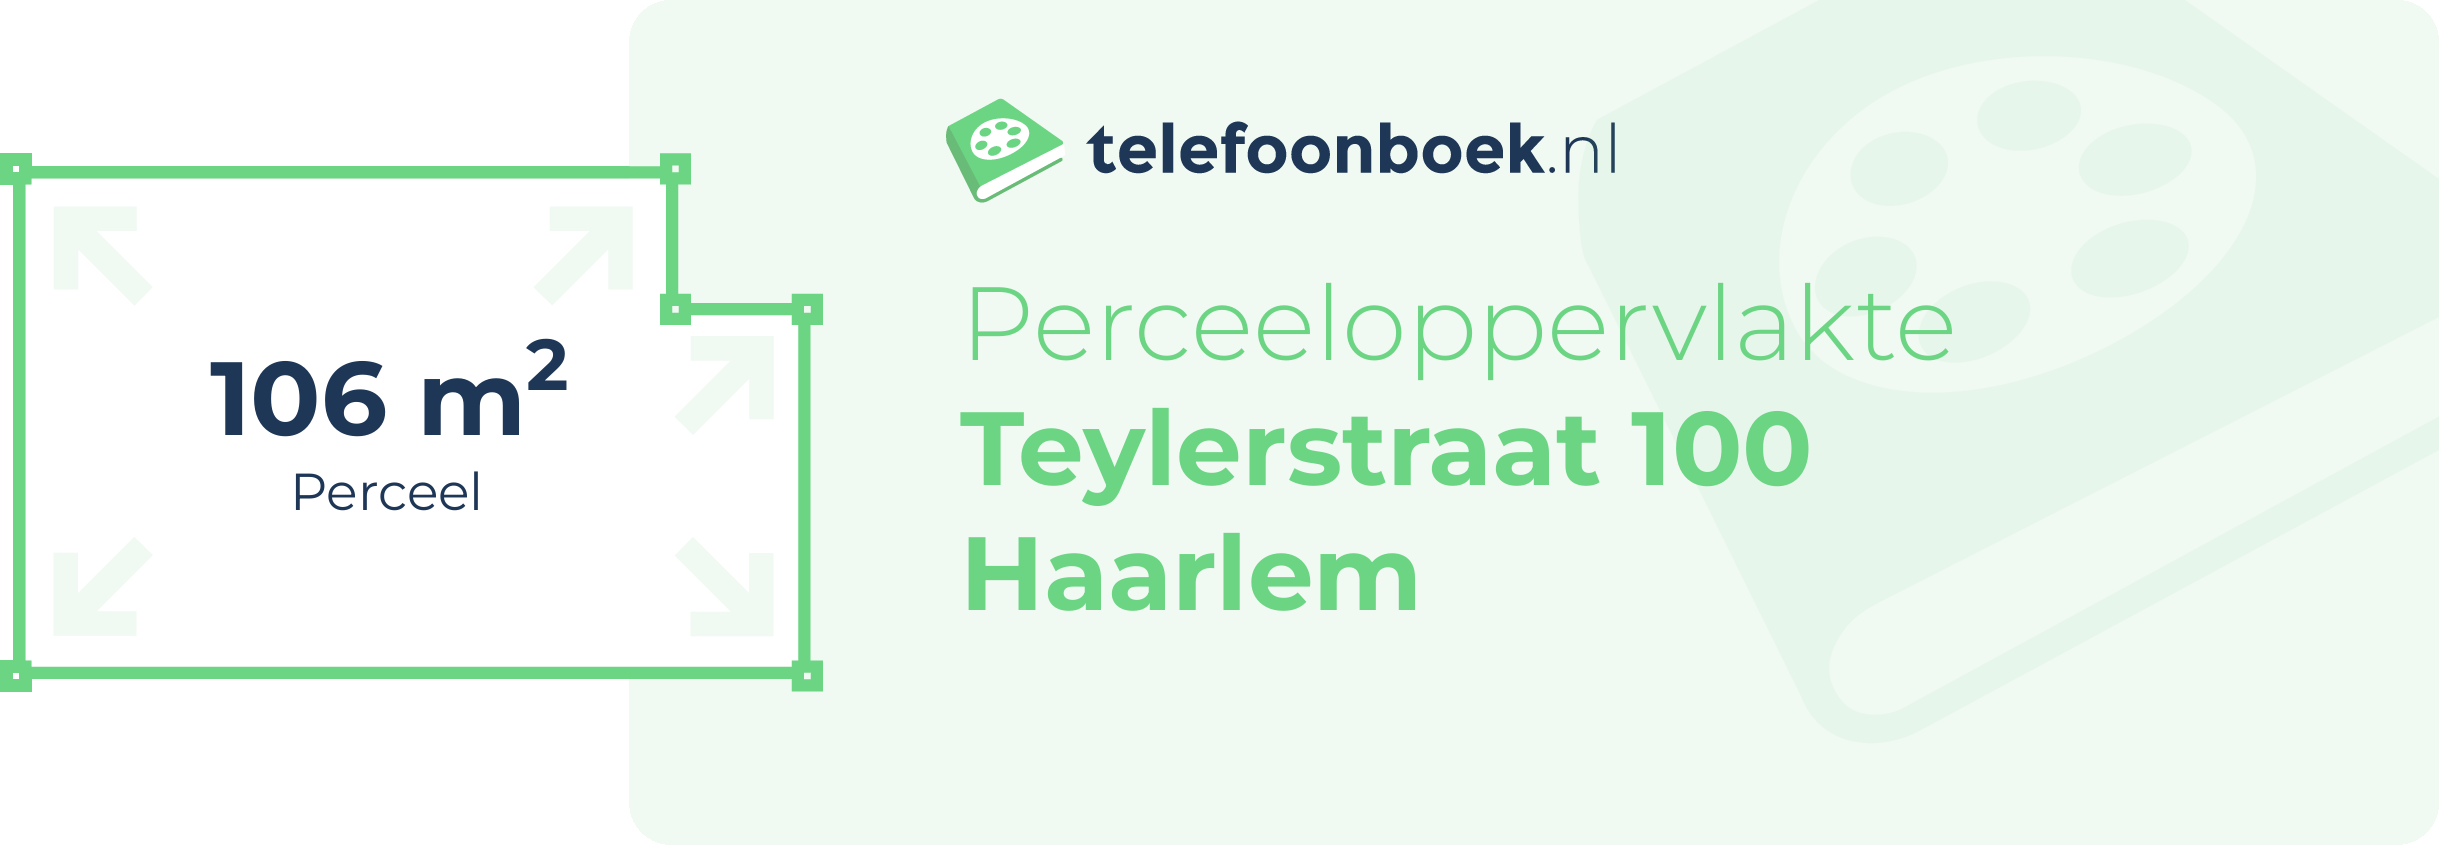 Perceeloppervlakte Teylerstraat 100 Haarlem